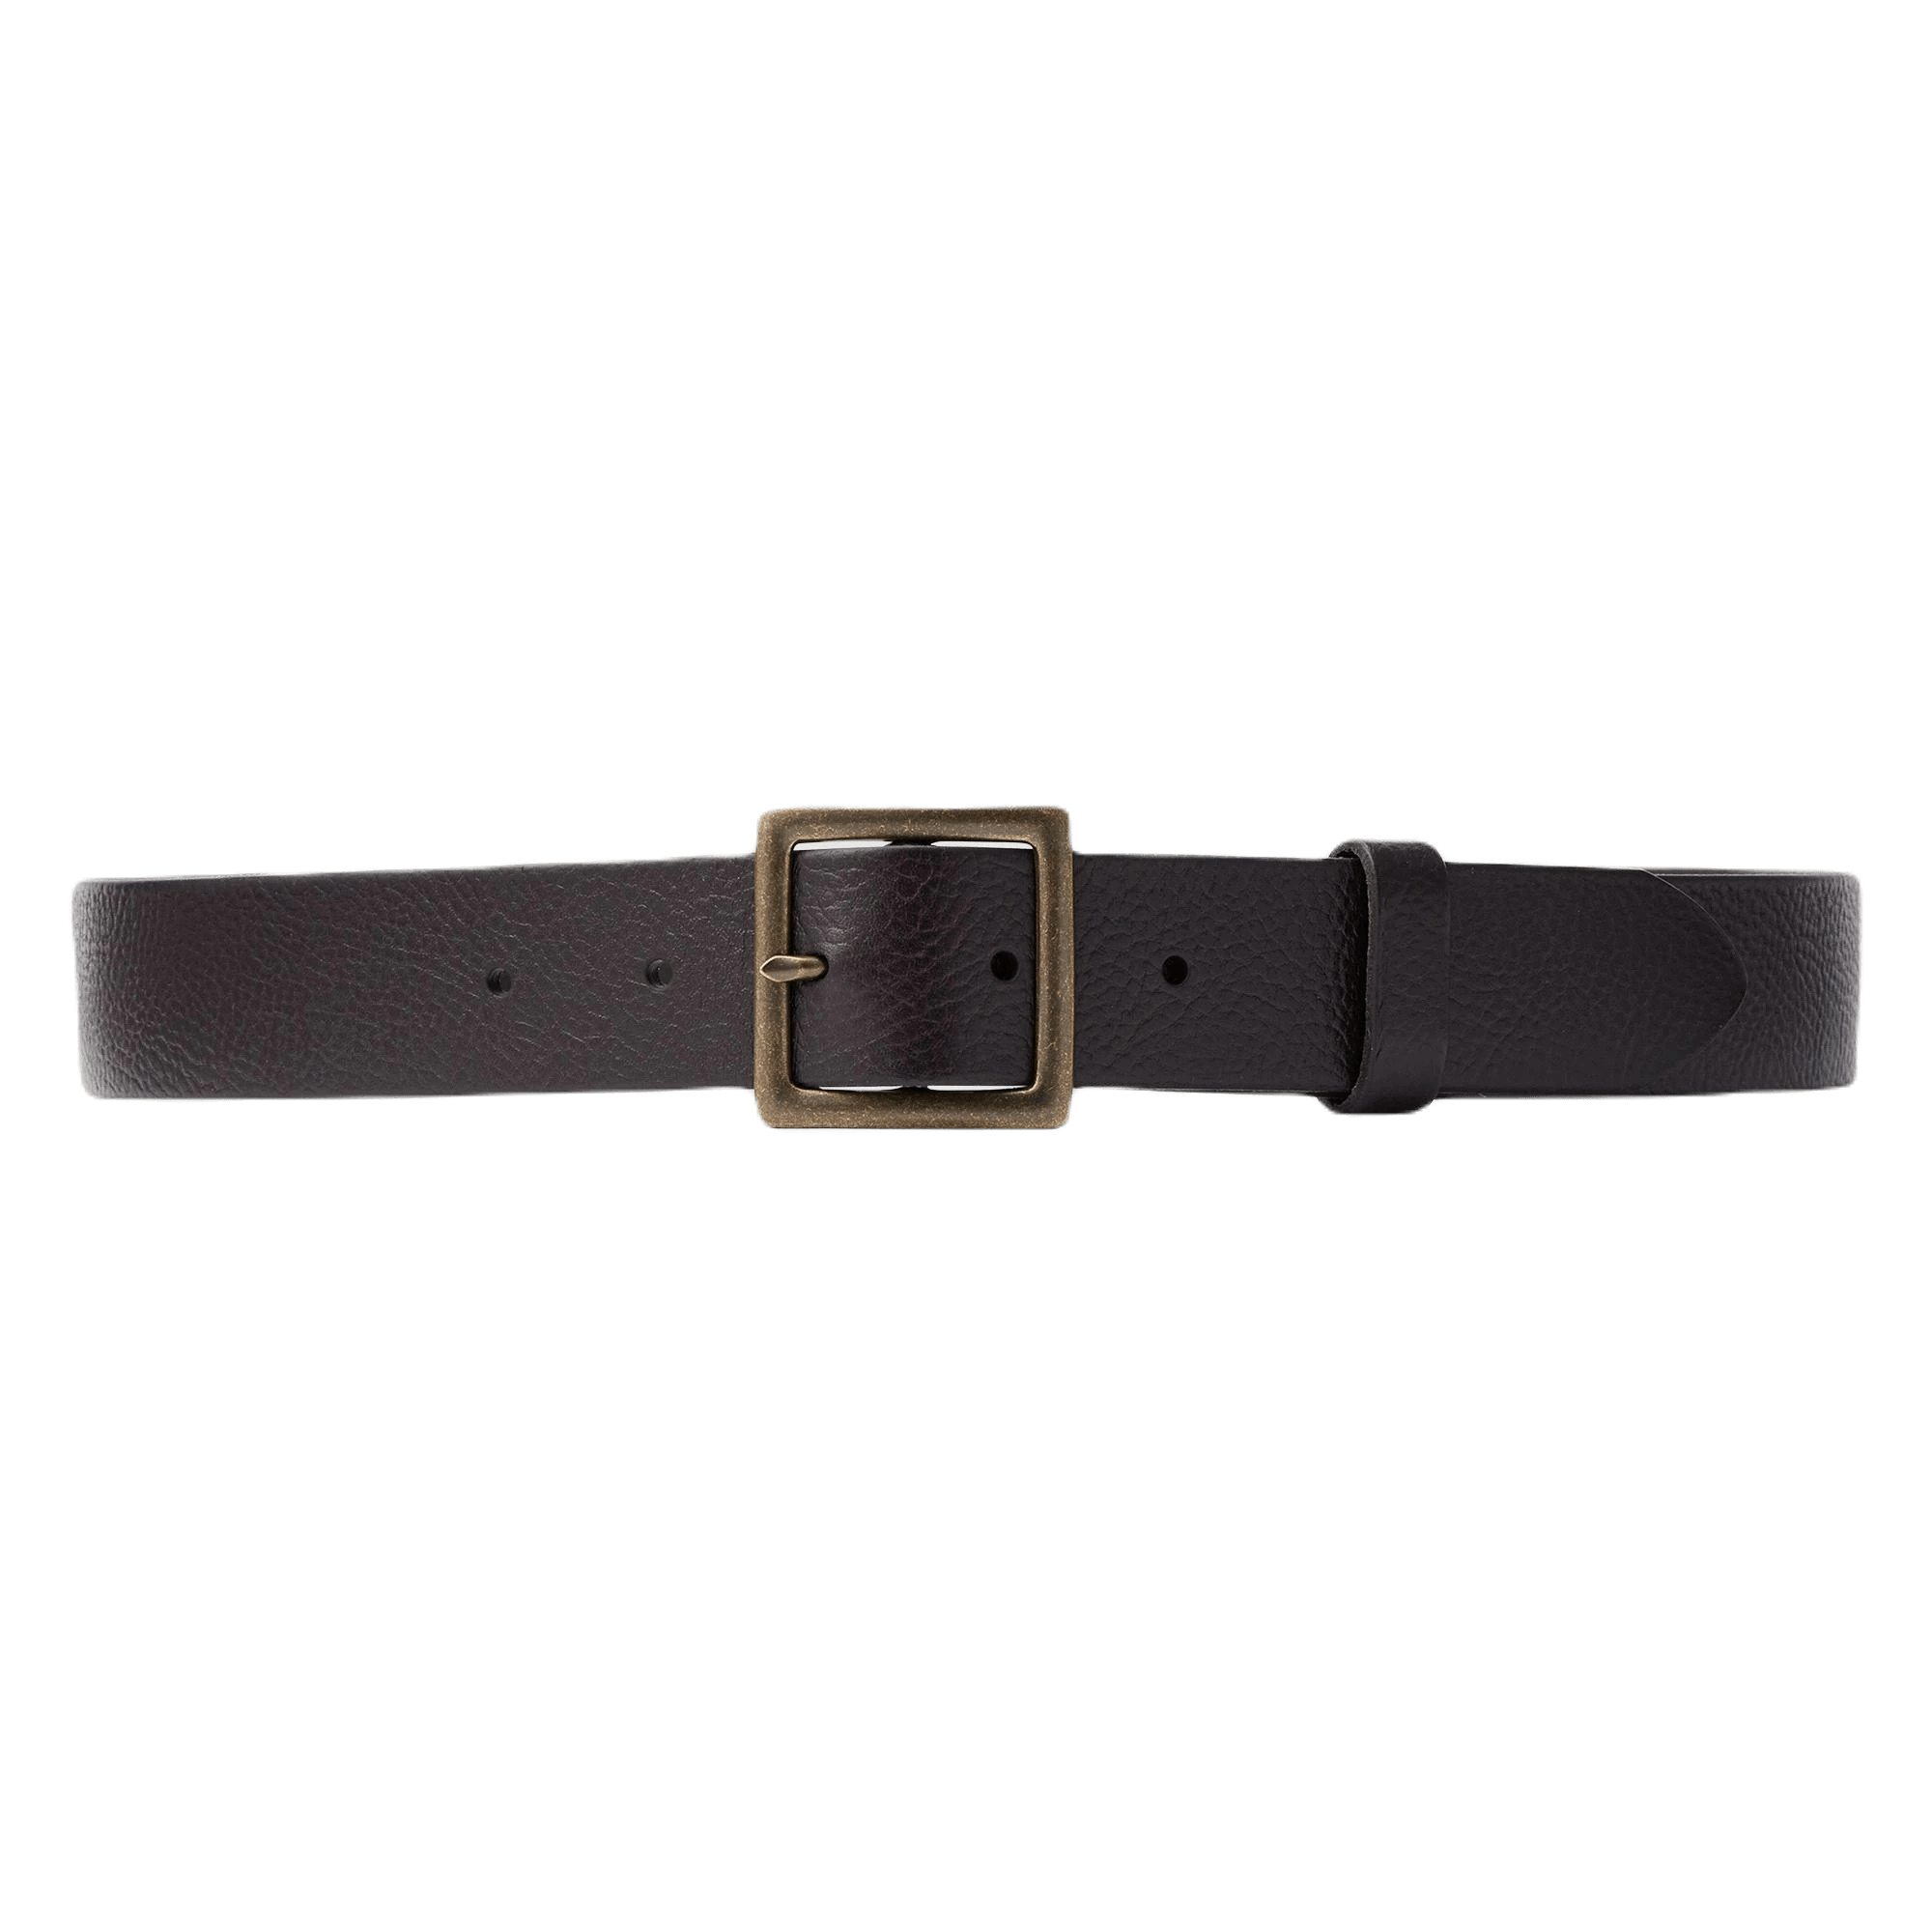 Ремень Uniqlo Italian Leather Vintage Style, темно-коричневый